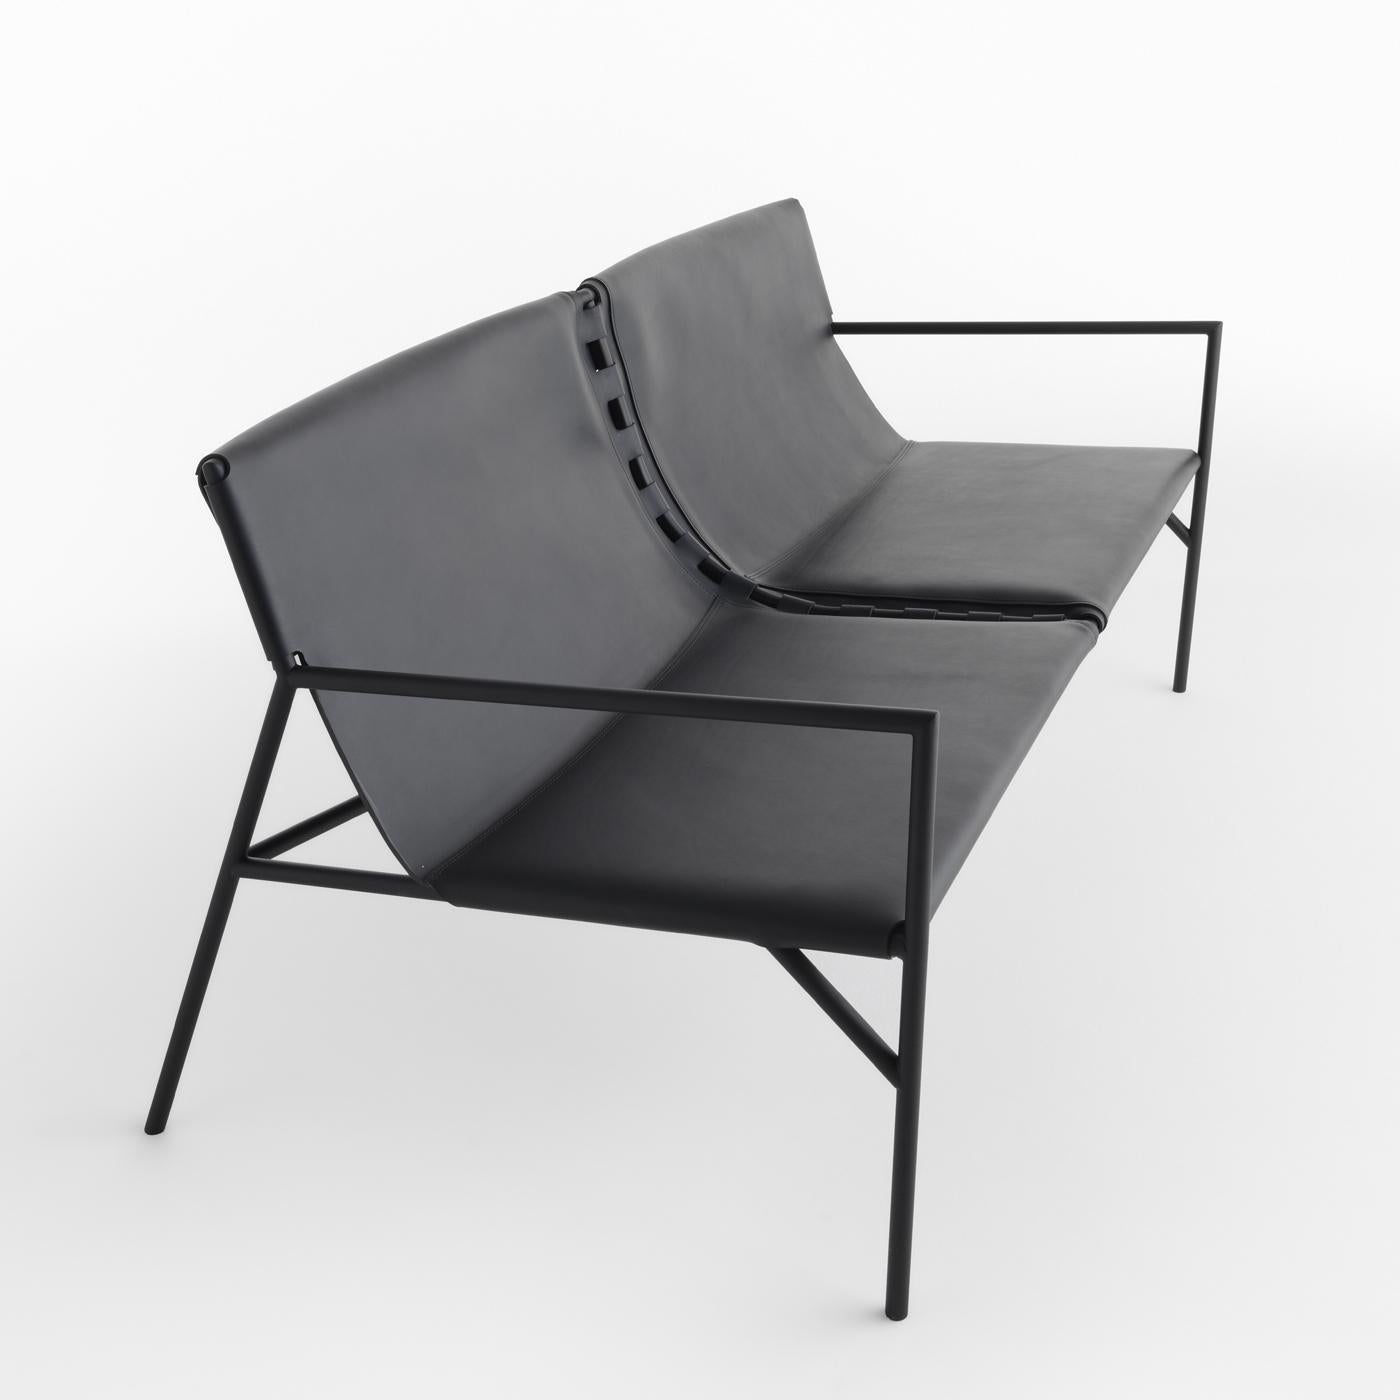 Ein schlankes und elegantes Sofa von Marc Thorpe, das eine solide Struktur mit raffinierten Materialien kombiniert und einen raffinierten Charakter hat. Das schlichte und minimalistische Design besteht aus einer schwarzen Metallstruktur mit